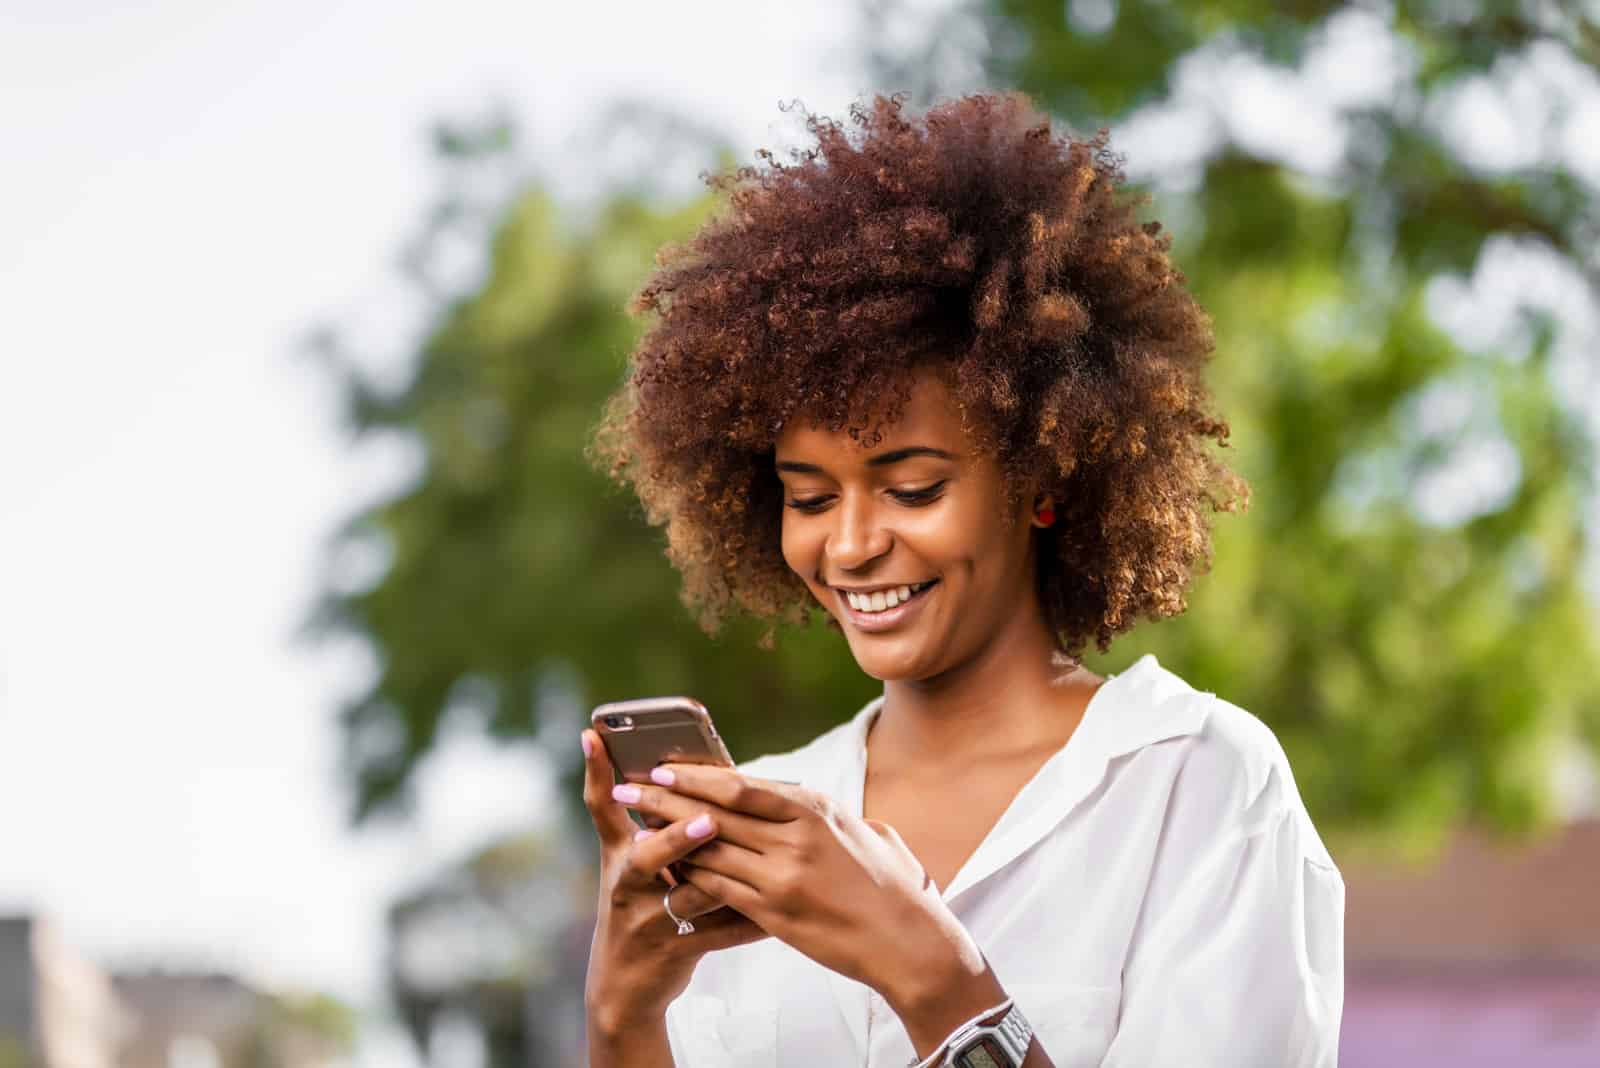 mujer sonriente con el pelo rizado enviando mensajes de texto al aire libre